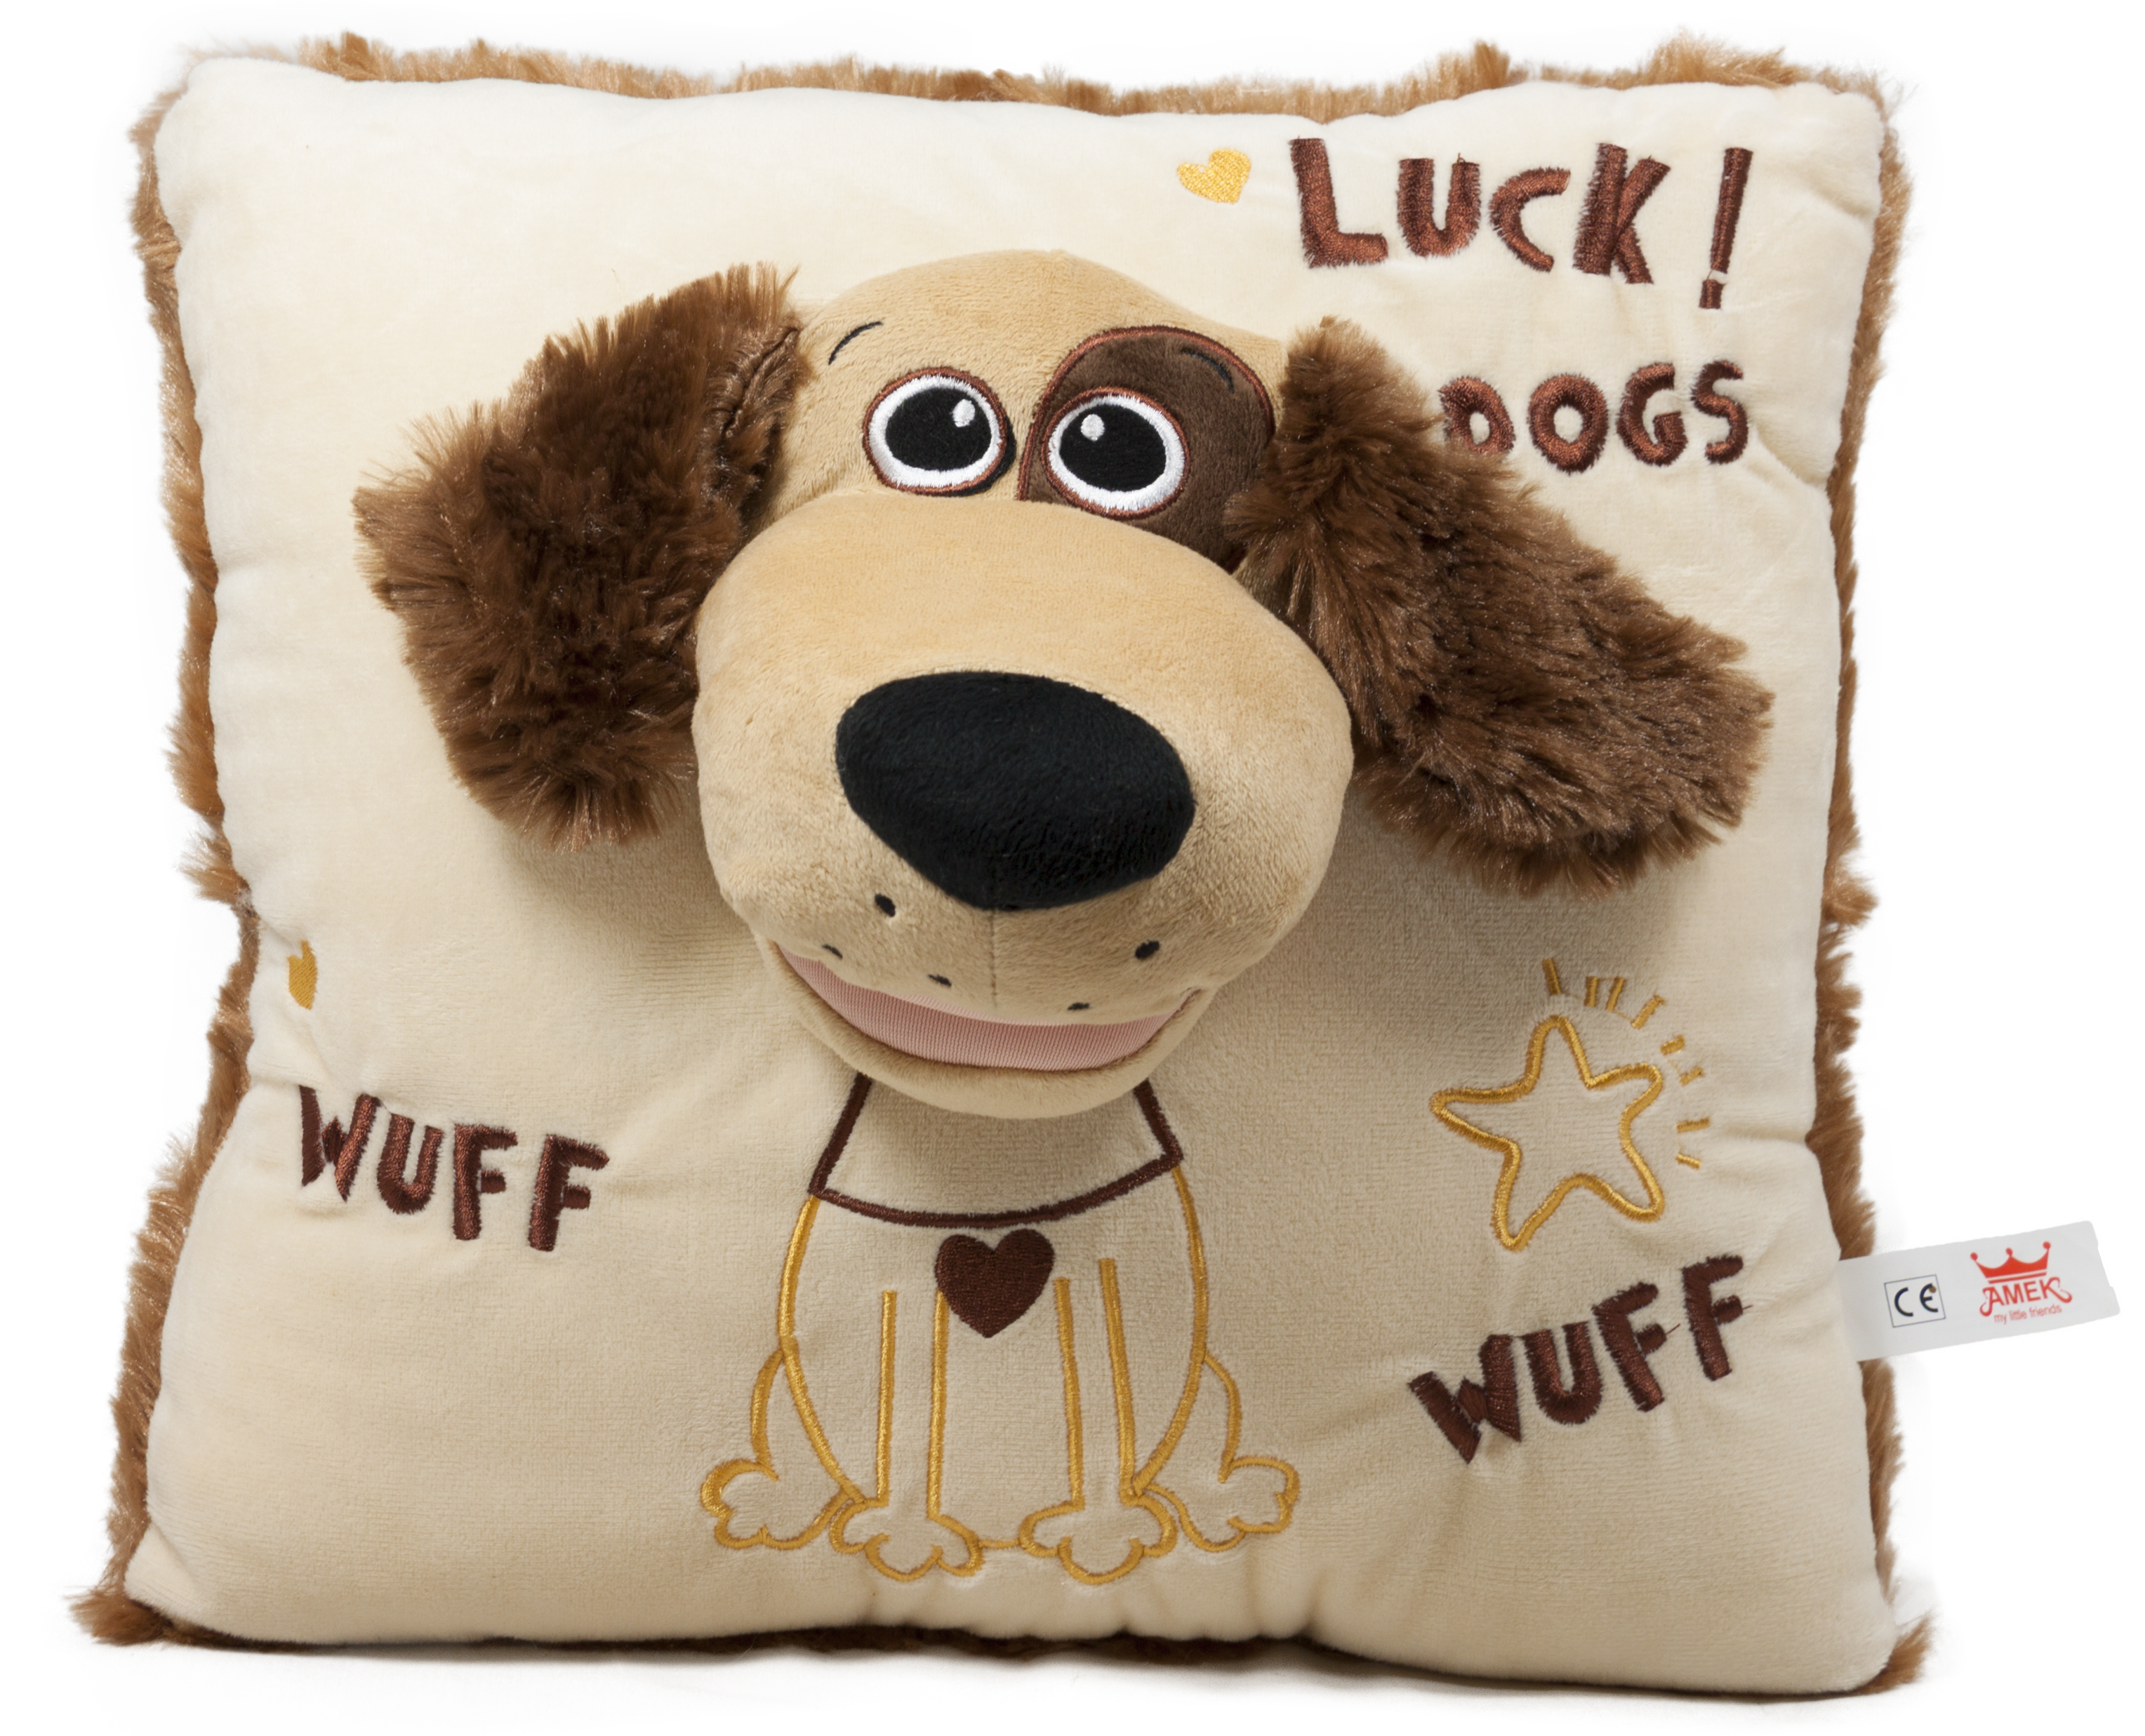 Puppet pillow - Dog